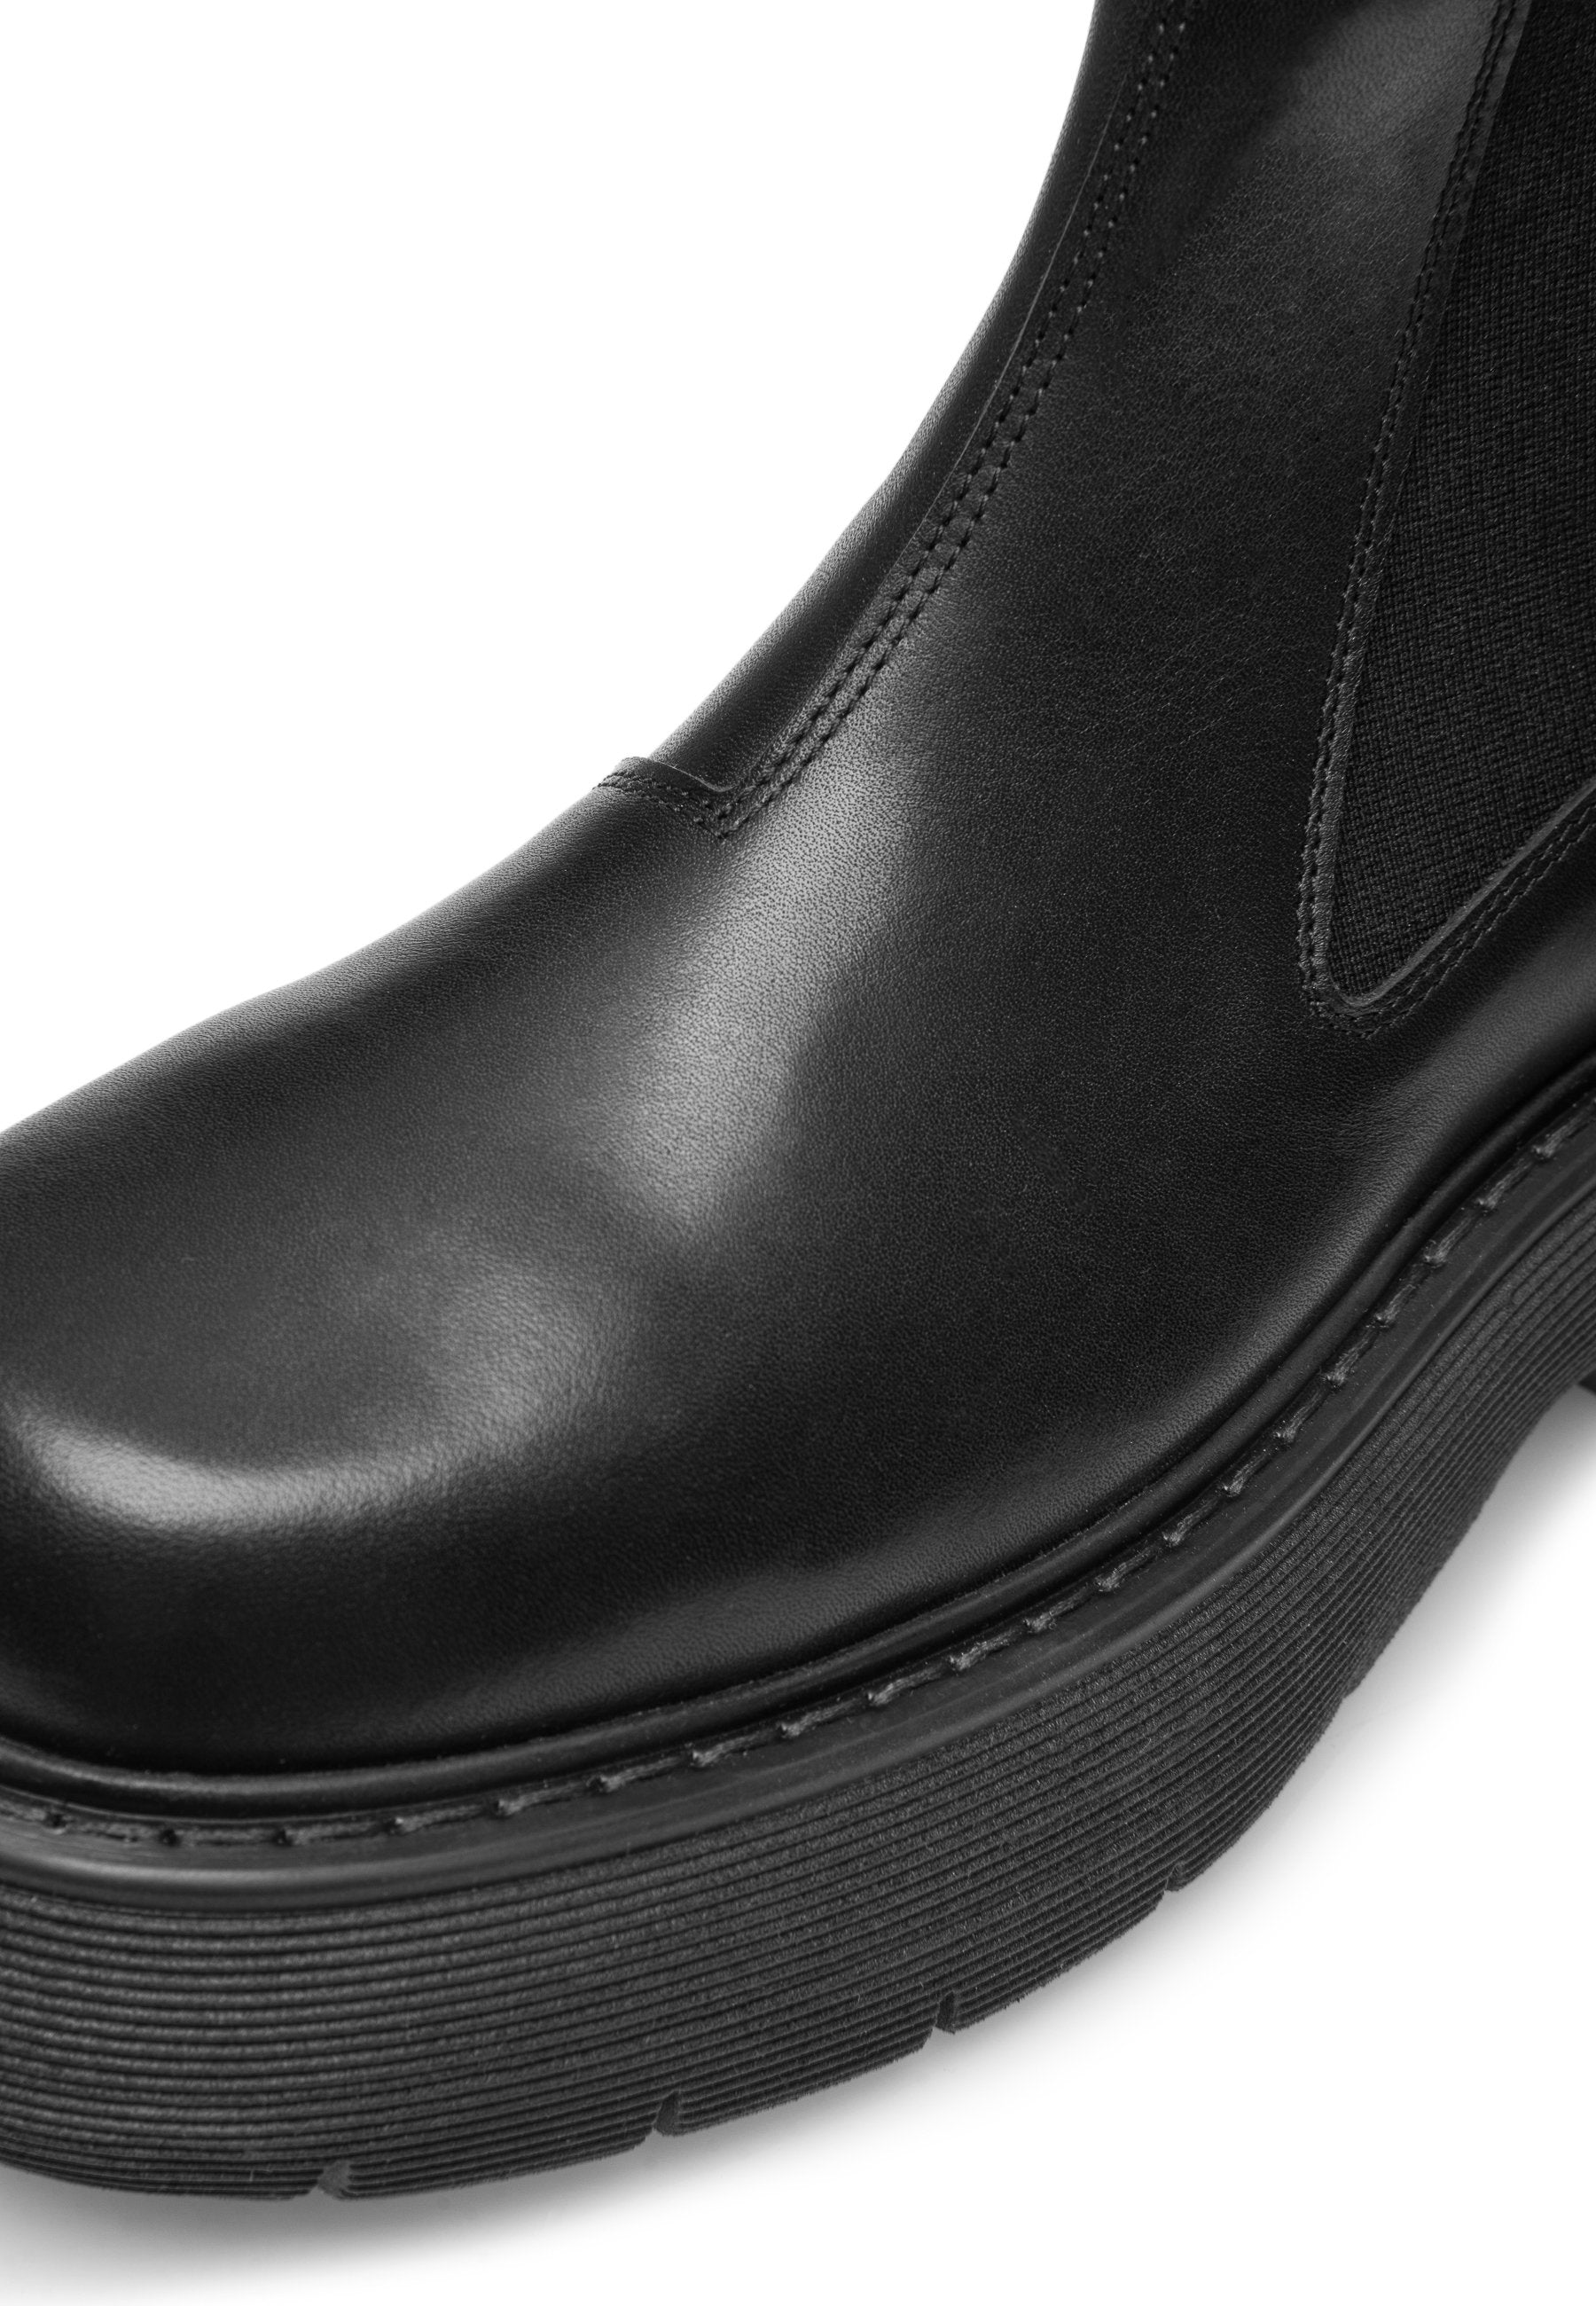 Ella Black Leather Chelsea Boots LAST1474 - 6